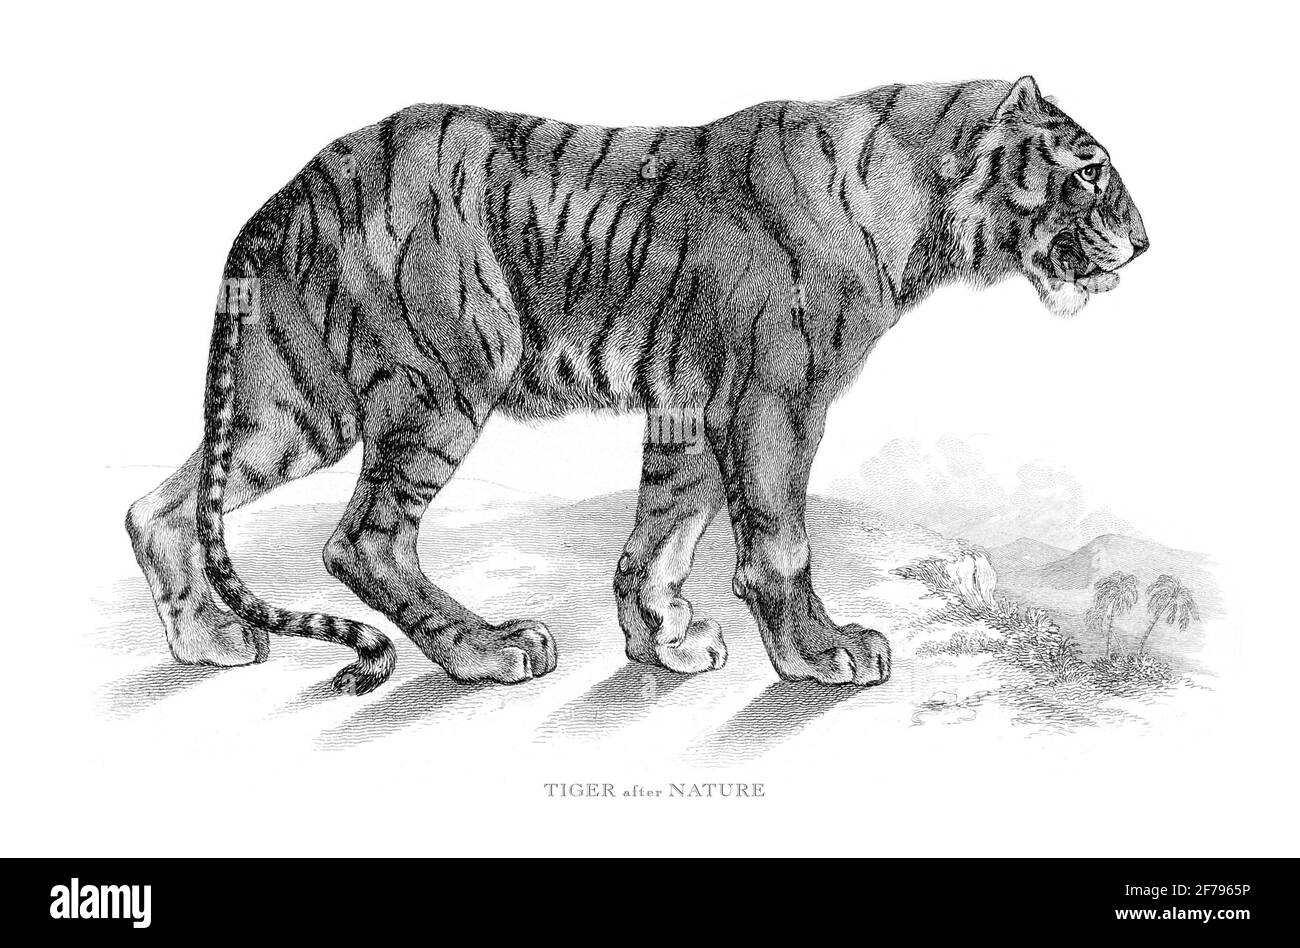 Portrait d'un tigre dans la nature Illustration gravée Banque D'Images